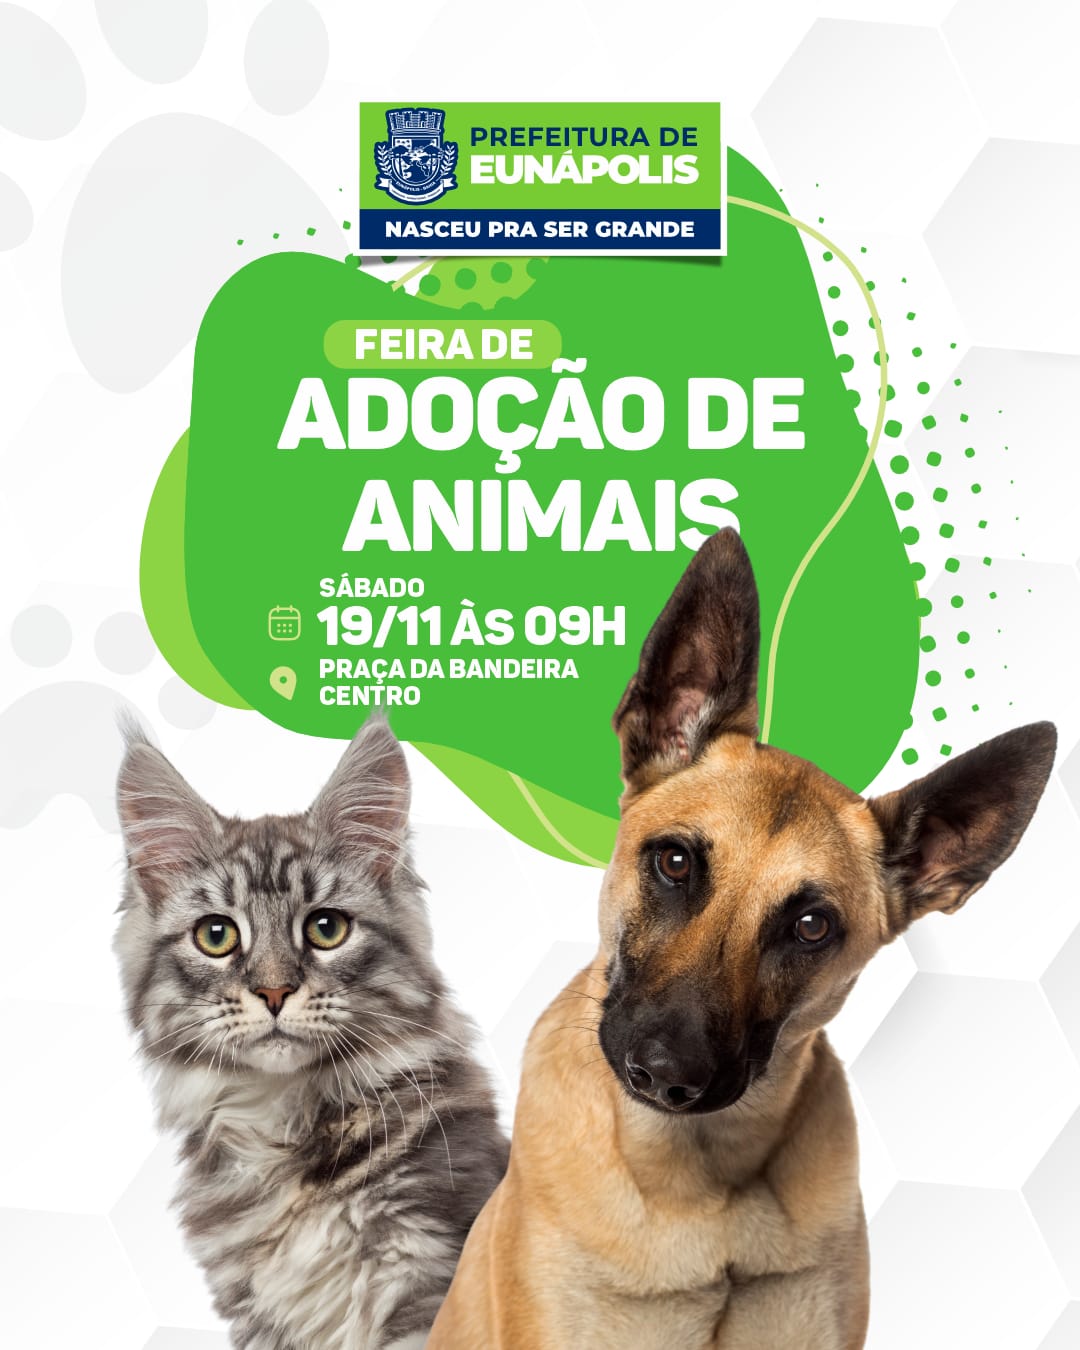 Prefeitura de Eunápolis realiza 2ª Feira de Adoção com animais resgatados neste sábado 21